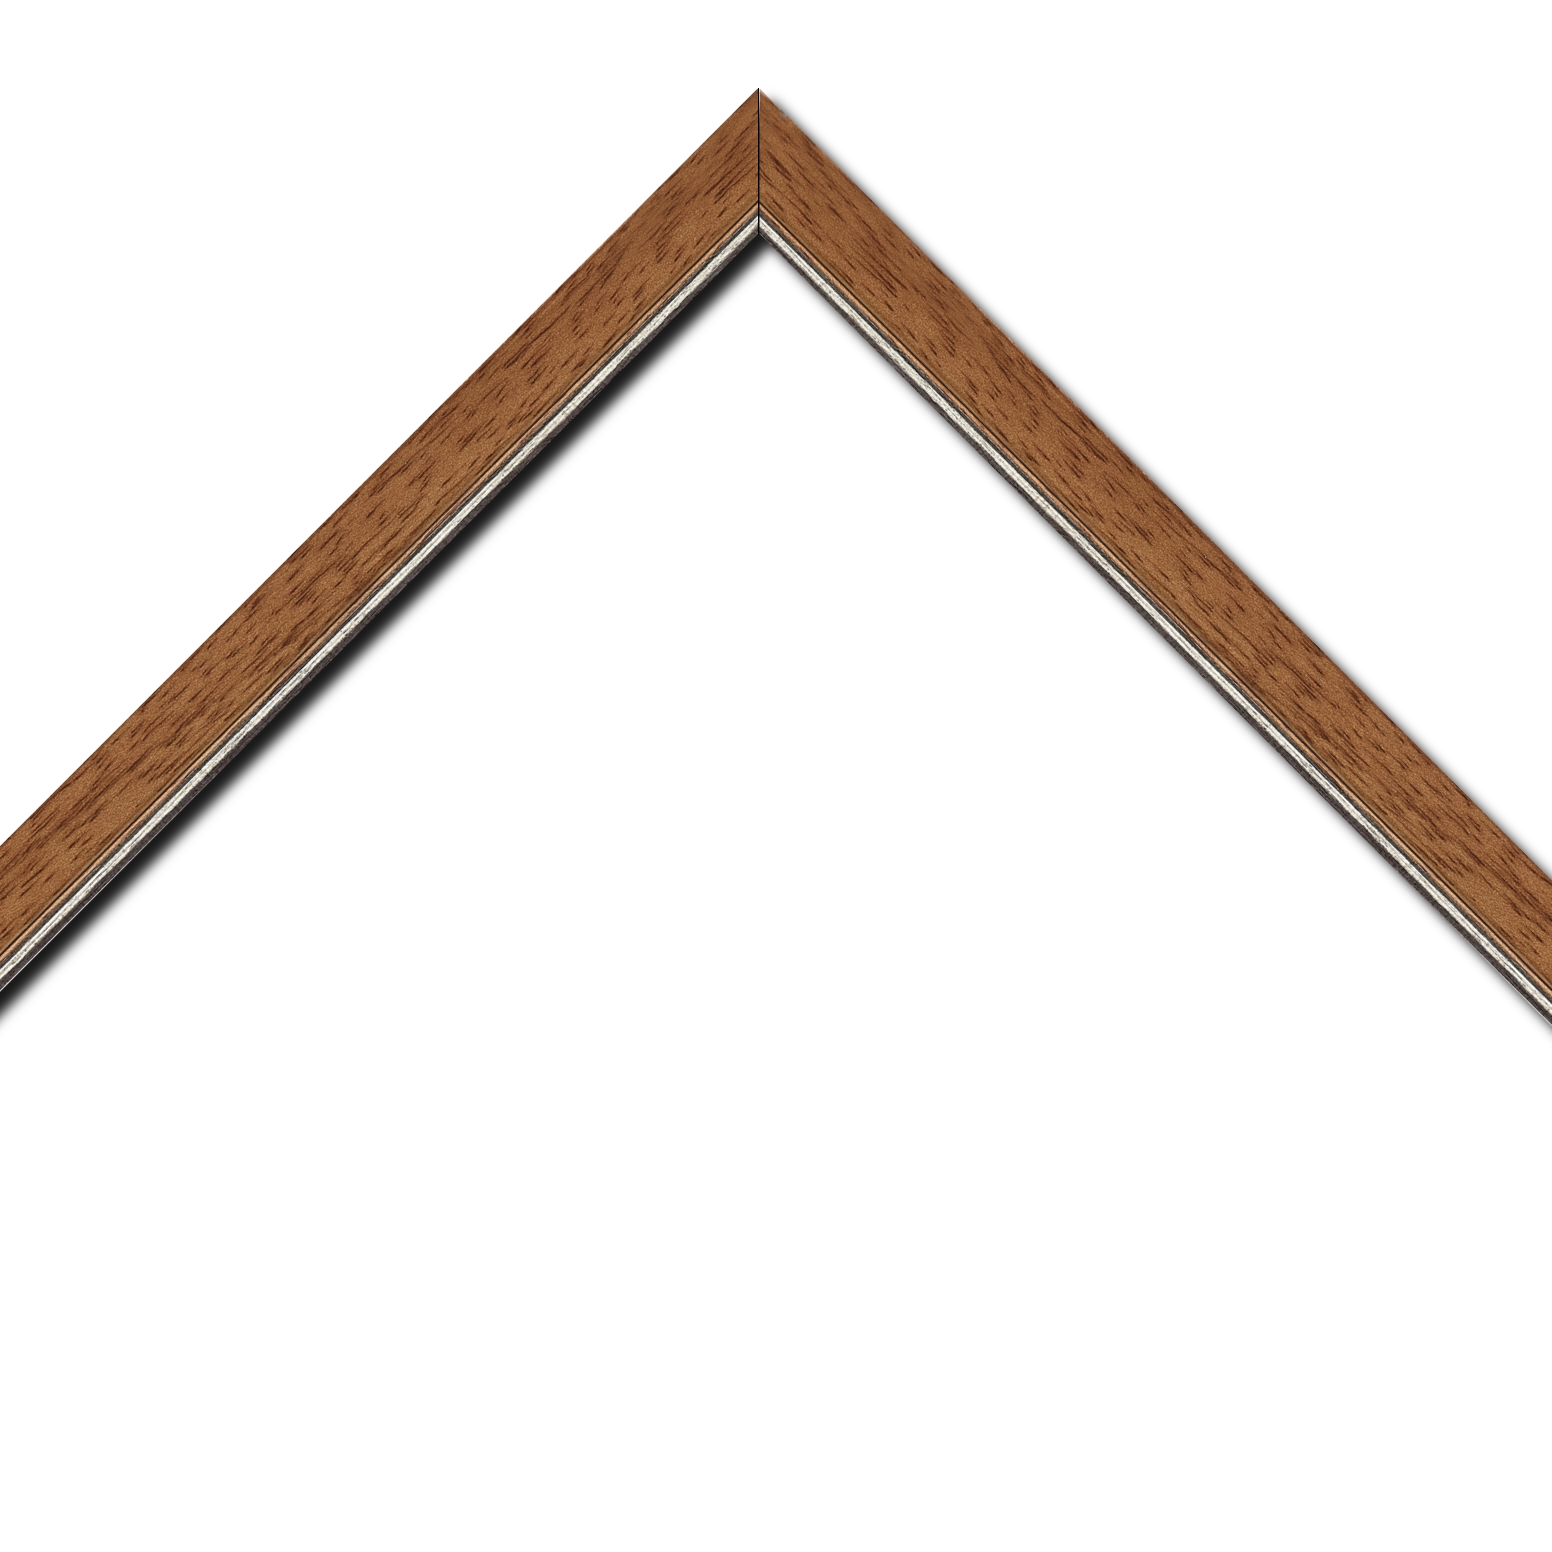 Baguette bois profil plat largeur 2.5cm couleur marron ton bois filet argent